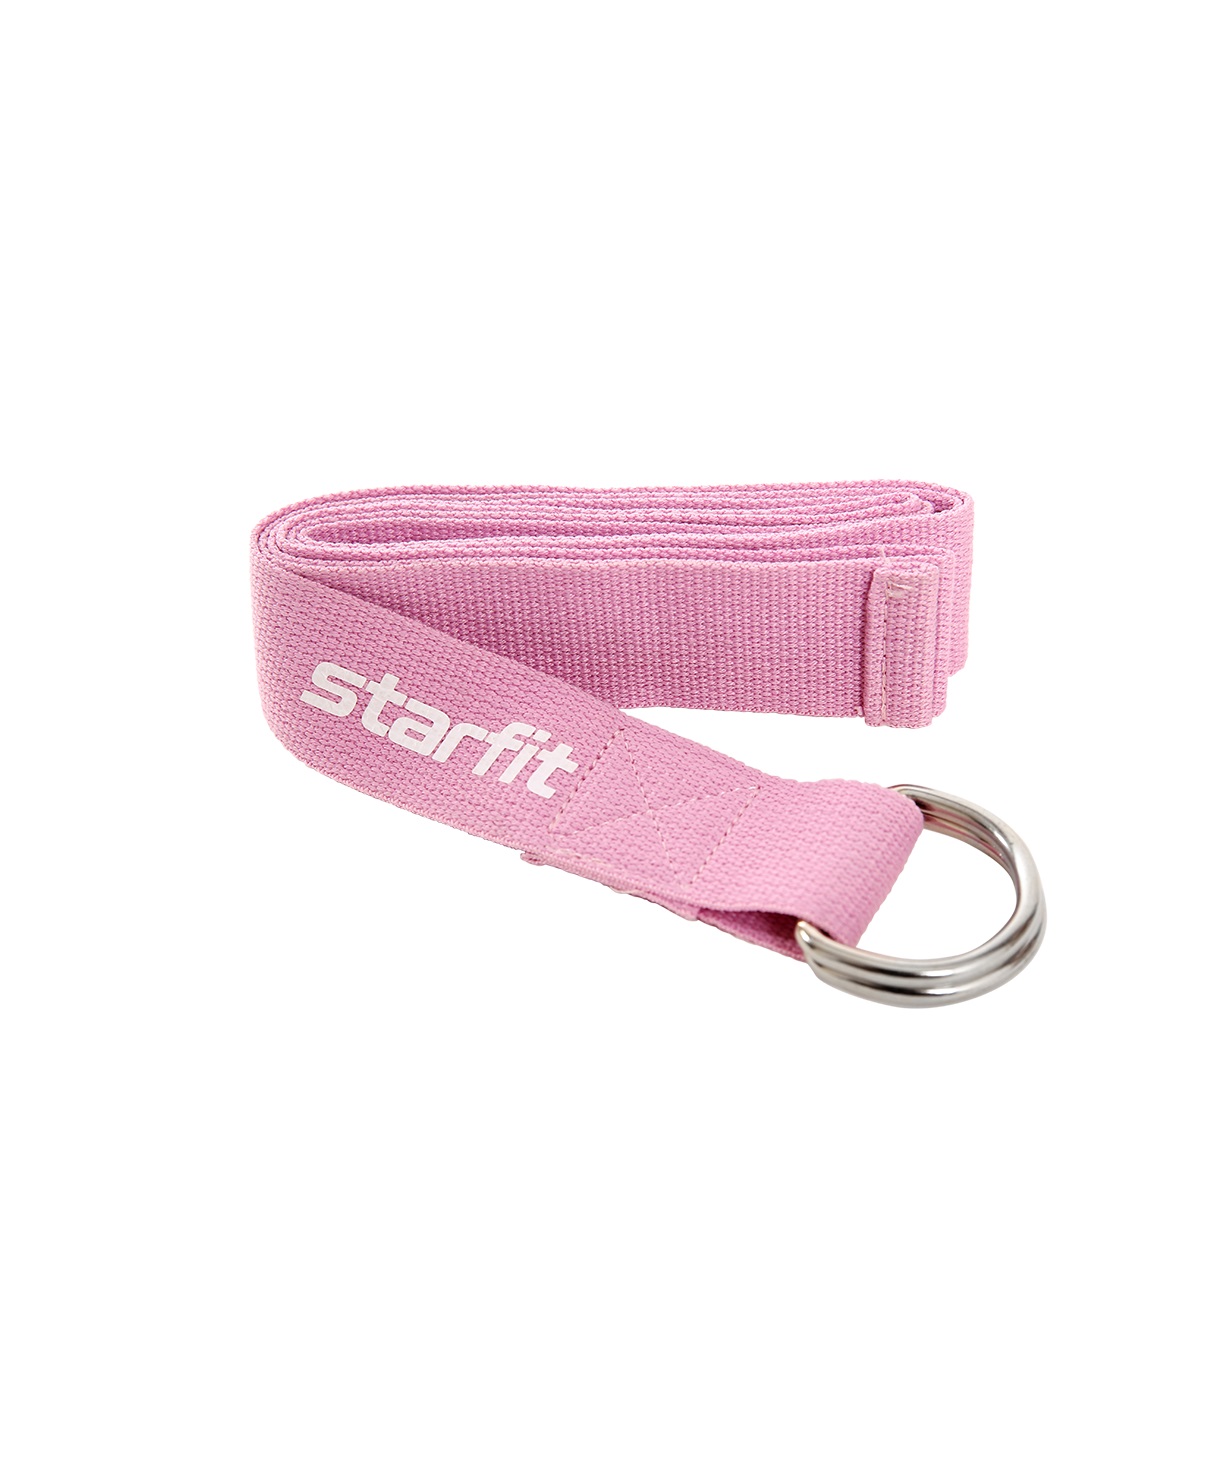 фото Ремень для йоги starfit core yb-100 186 см, хлопок, розовый пастель